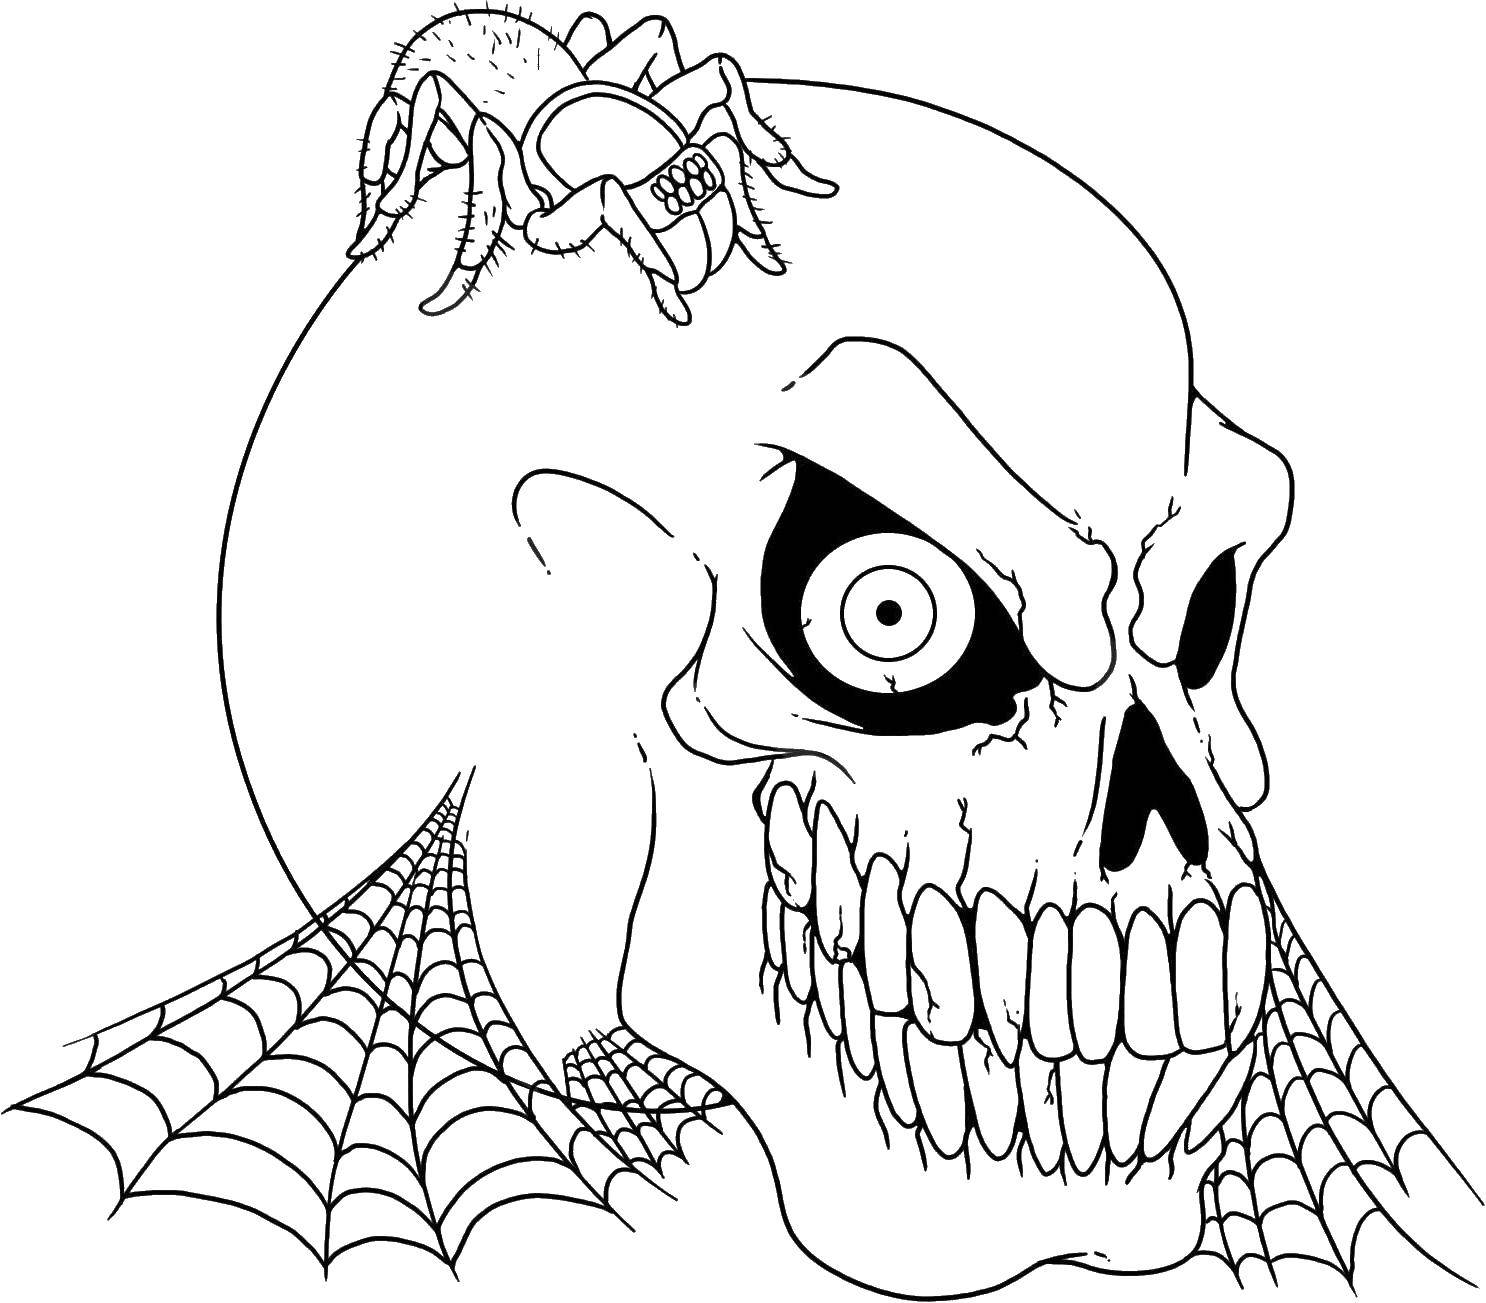 Опис: розмальовки  Череп з павуком. Категорія: череп. Теги:  череп, павуки.